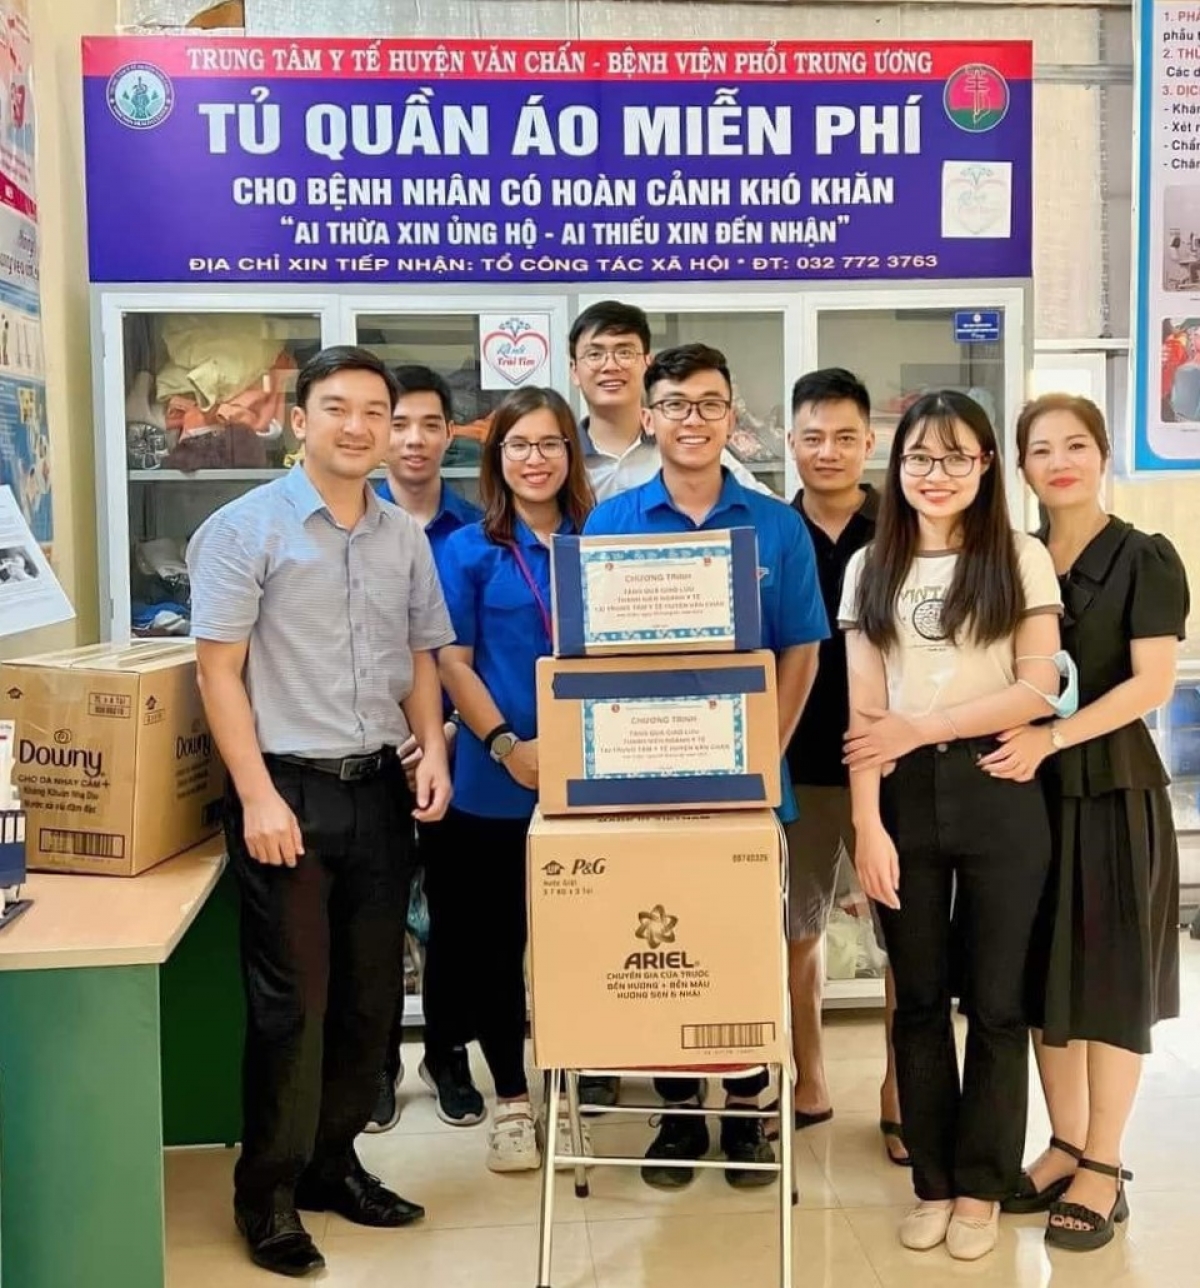 Đoàn công tác Viện Phổi Trung Ương tặng quà cho Trung tâm Y tế huyện Văn Chấn